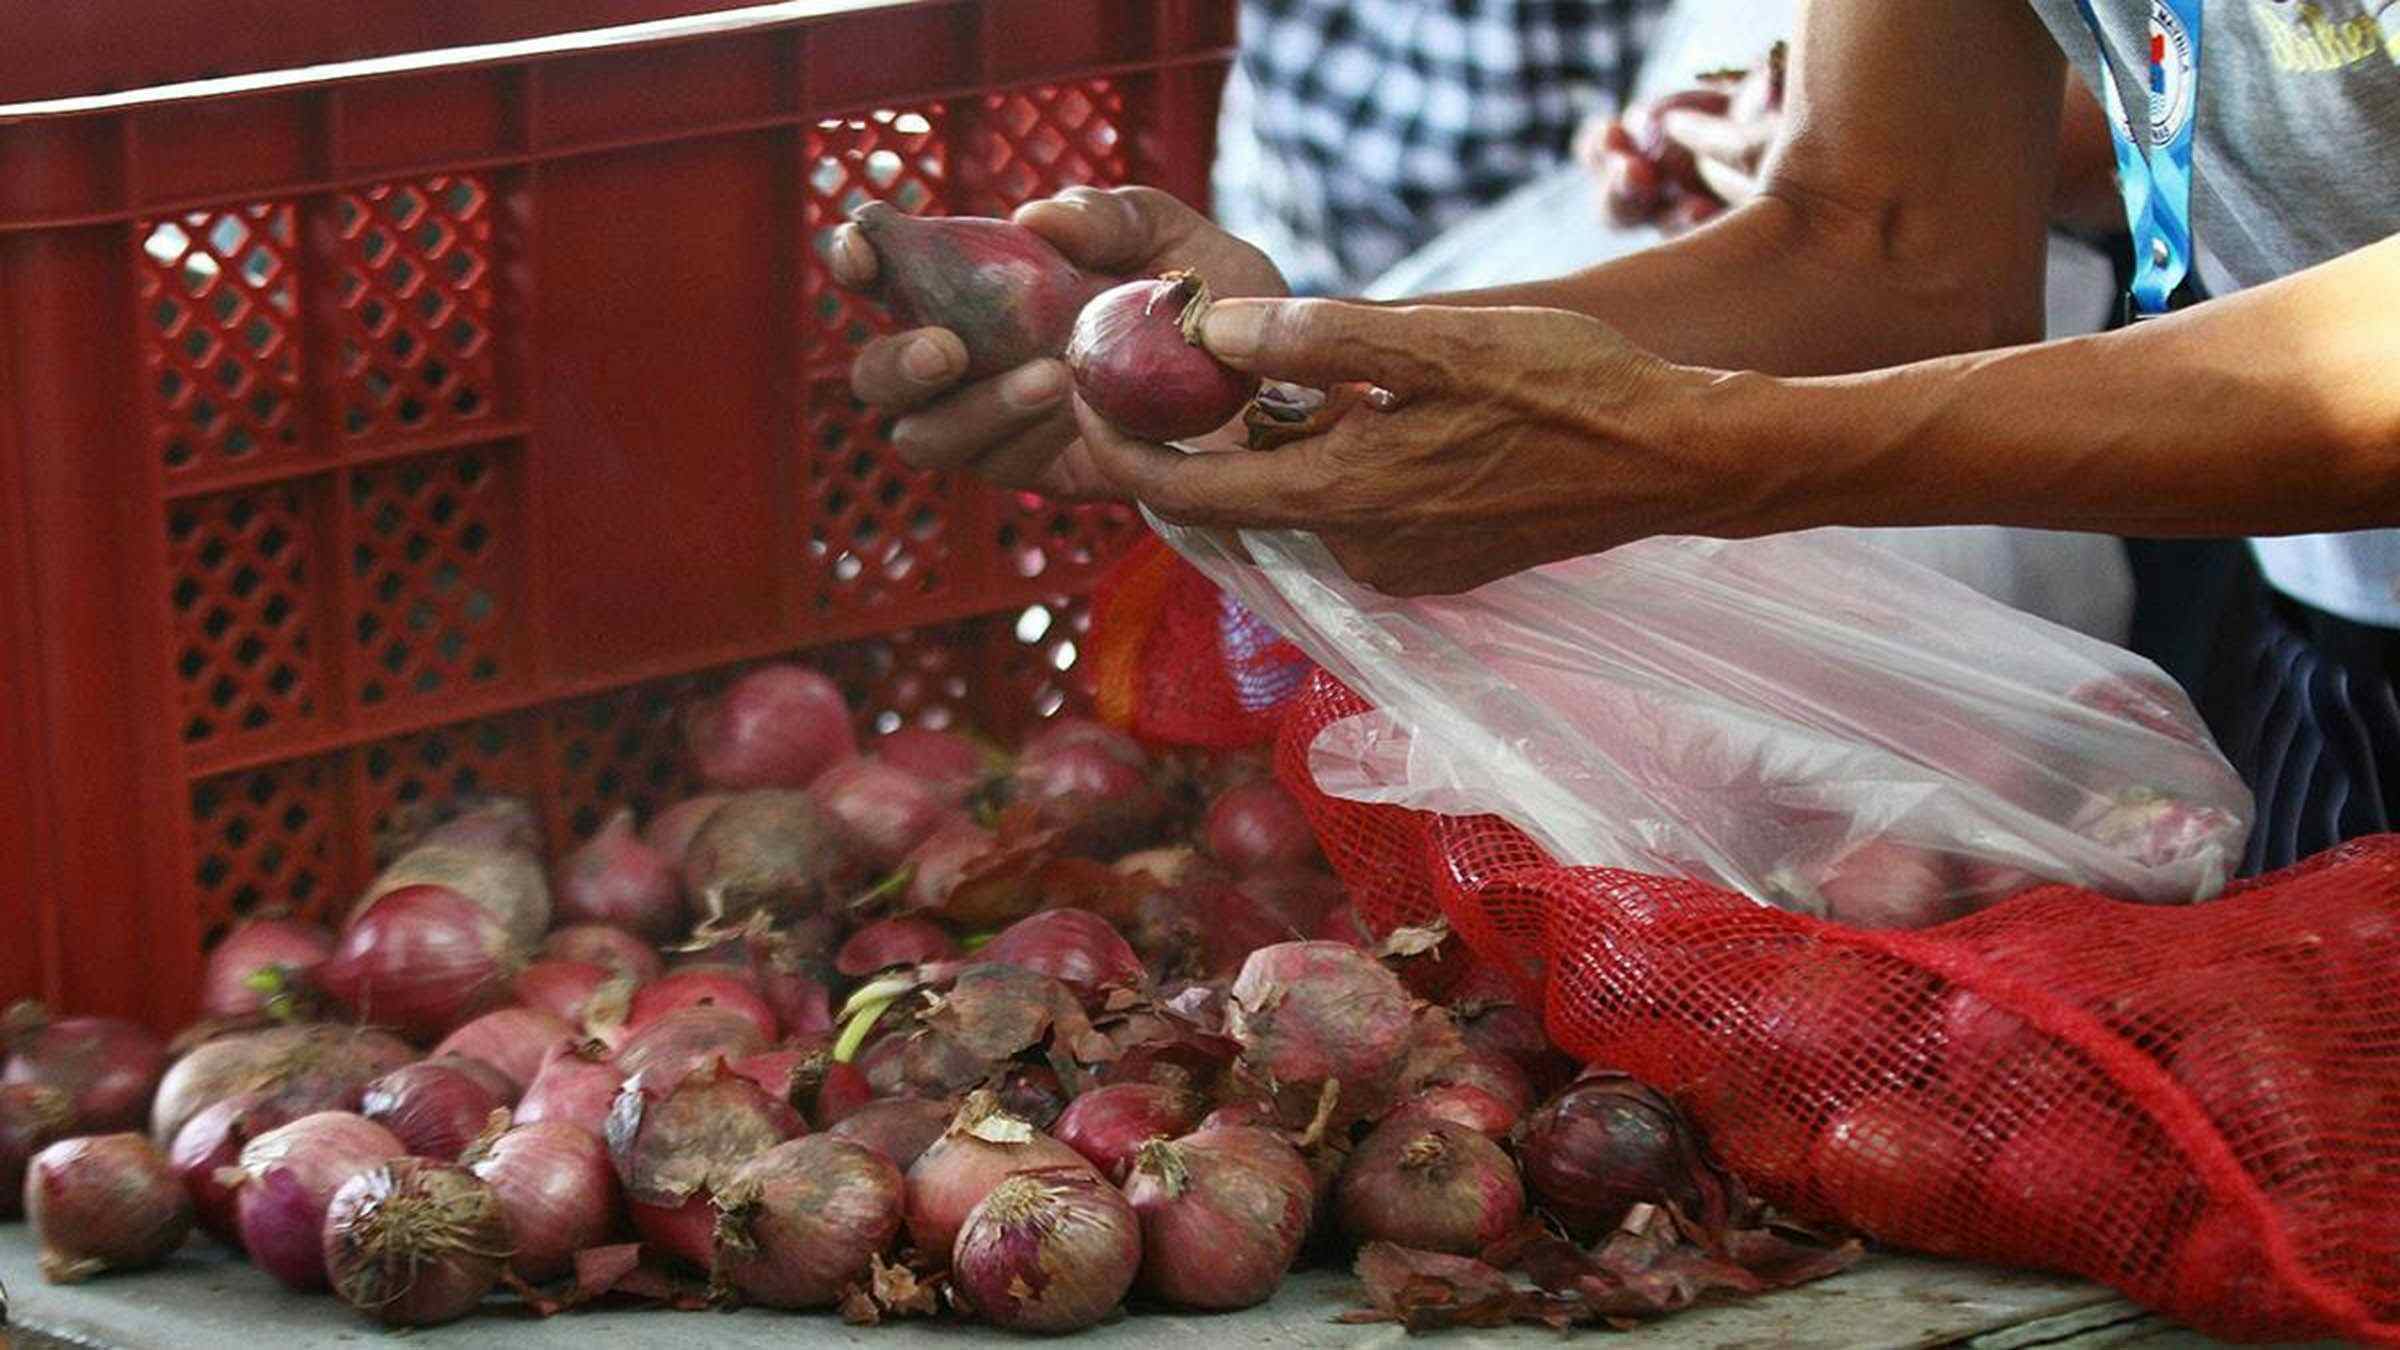 Onion prices to go down to P200 per kilo